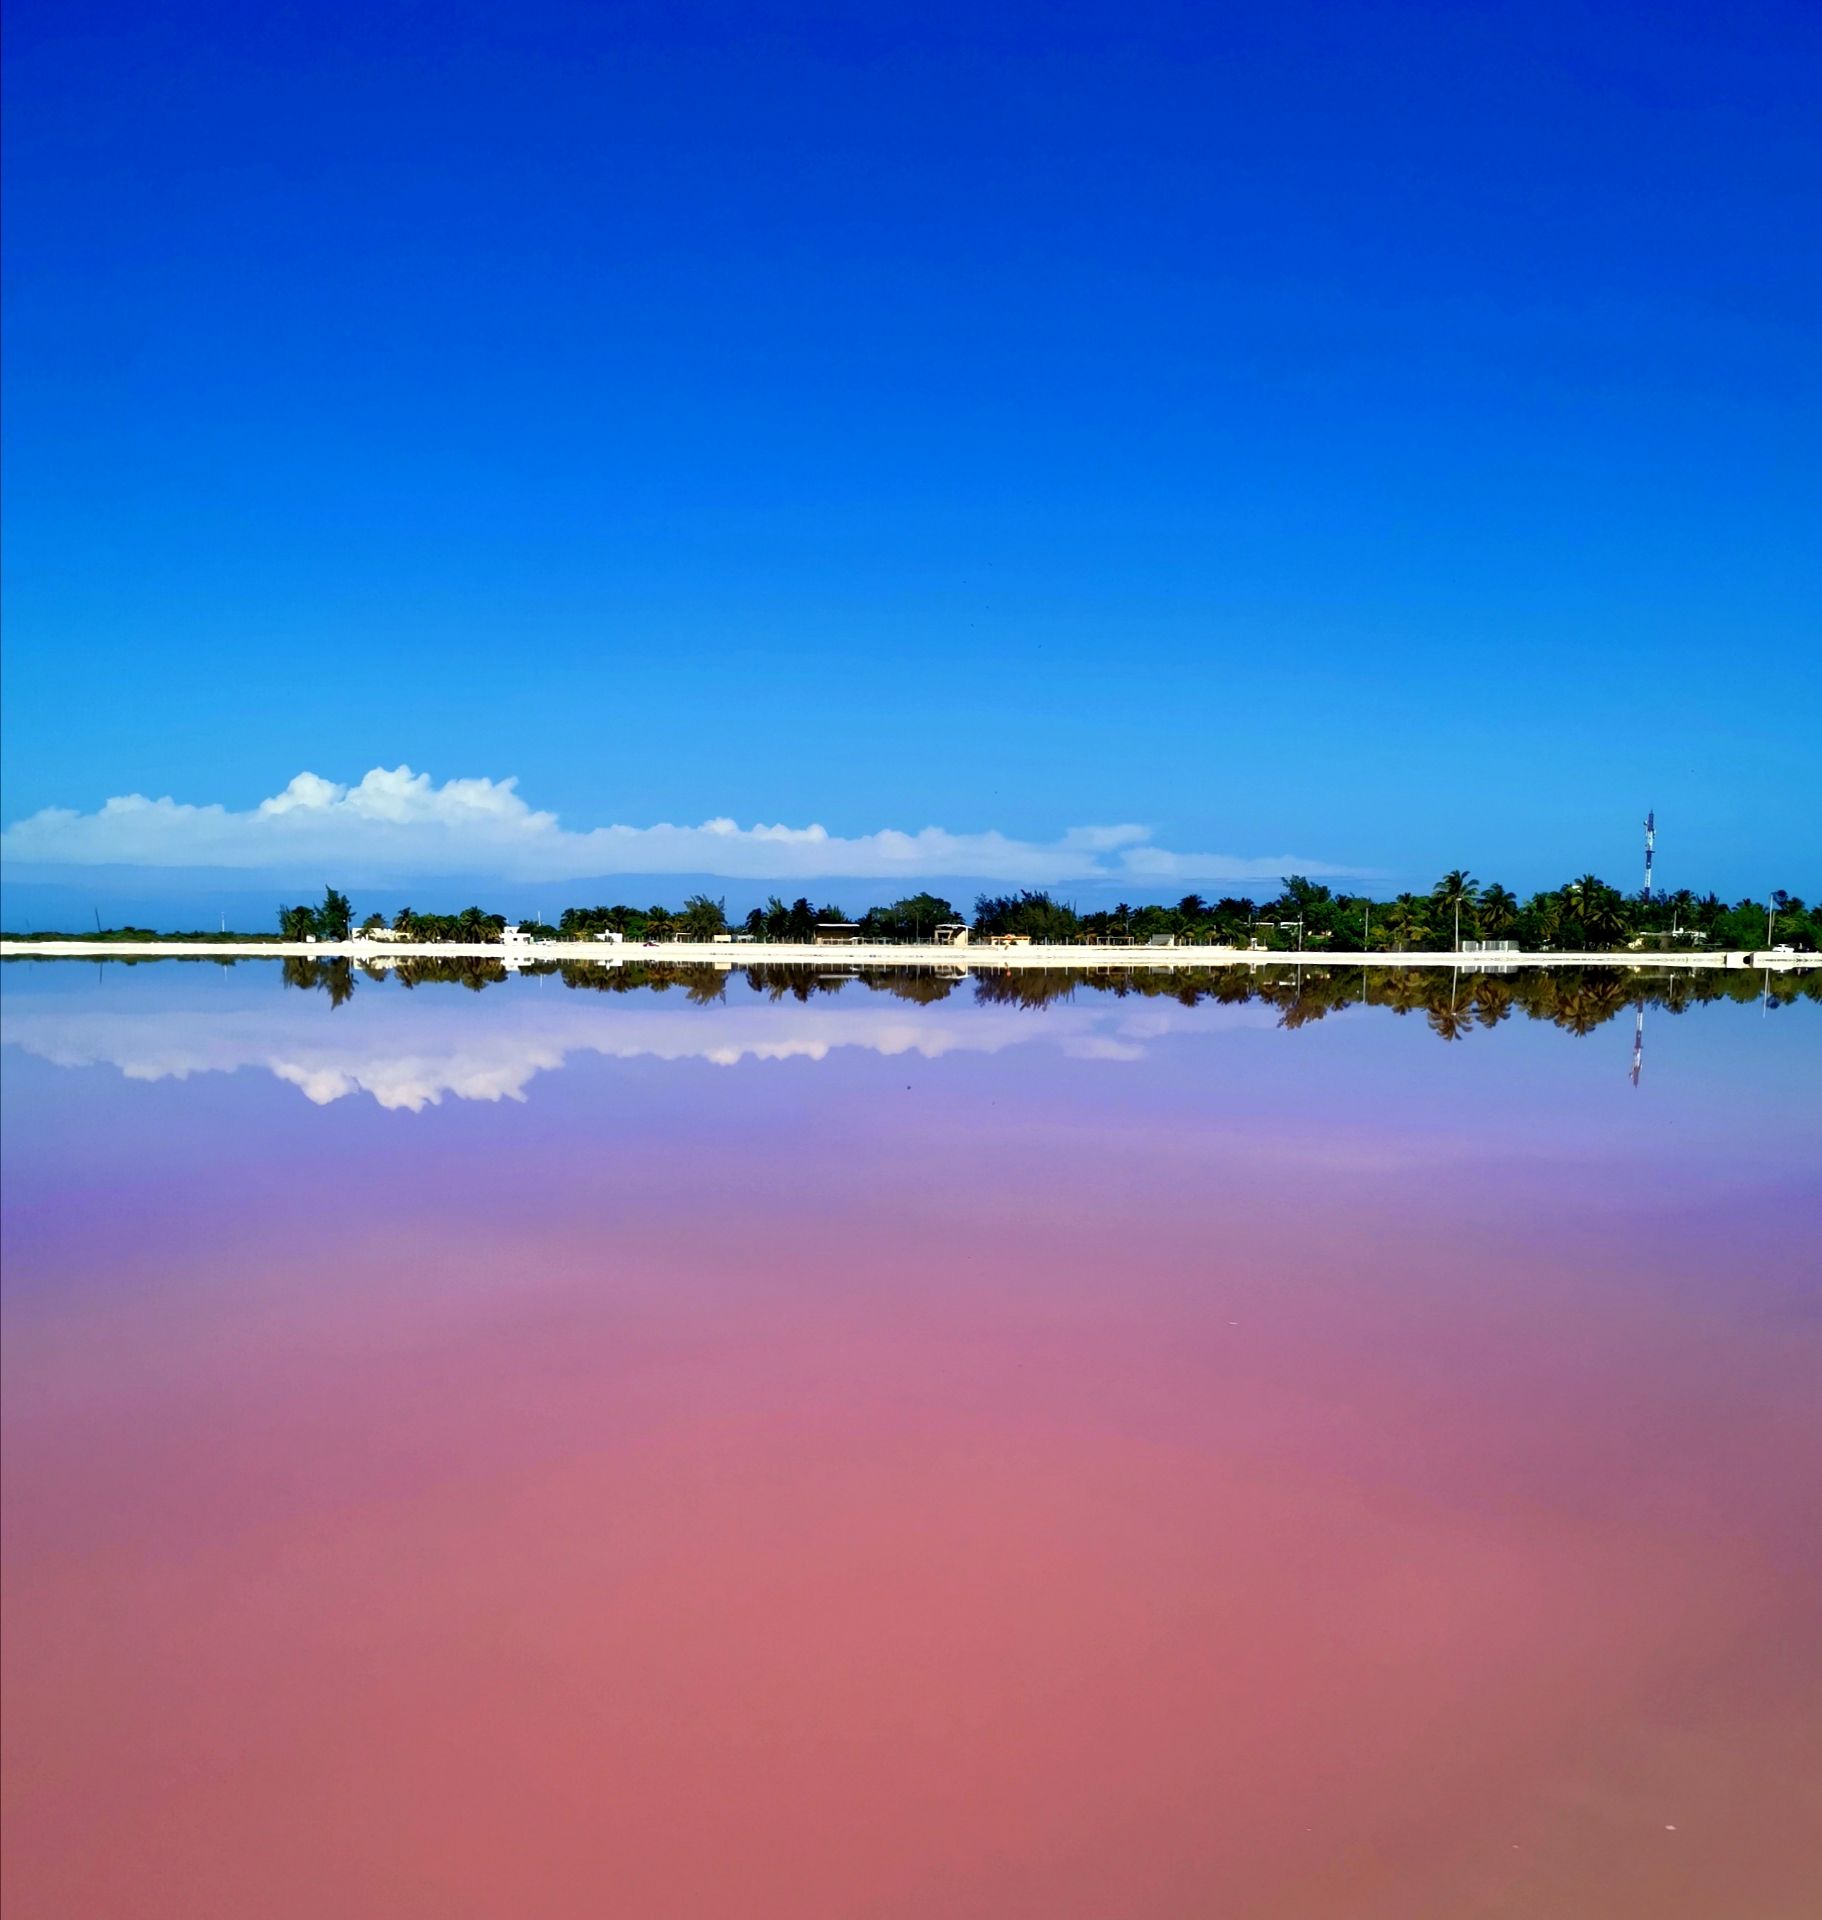 粉紅湖其實是一个私人盐場, 因為其獨特化學作用, 在陽光下会变成粉紅色, 極為美麗壯觀。参觀完便坐快